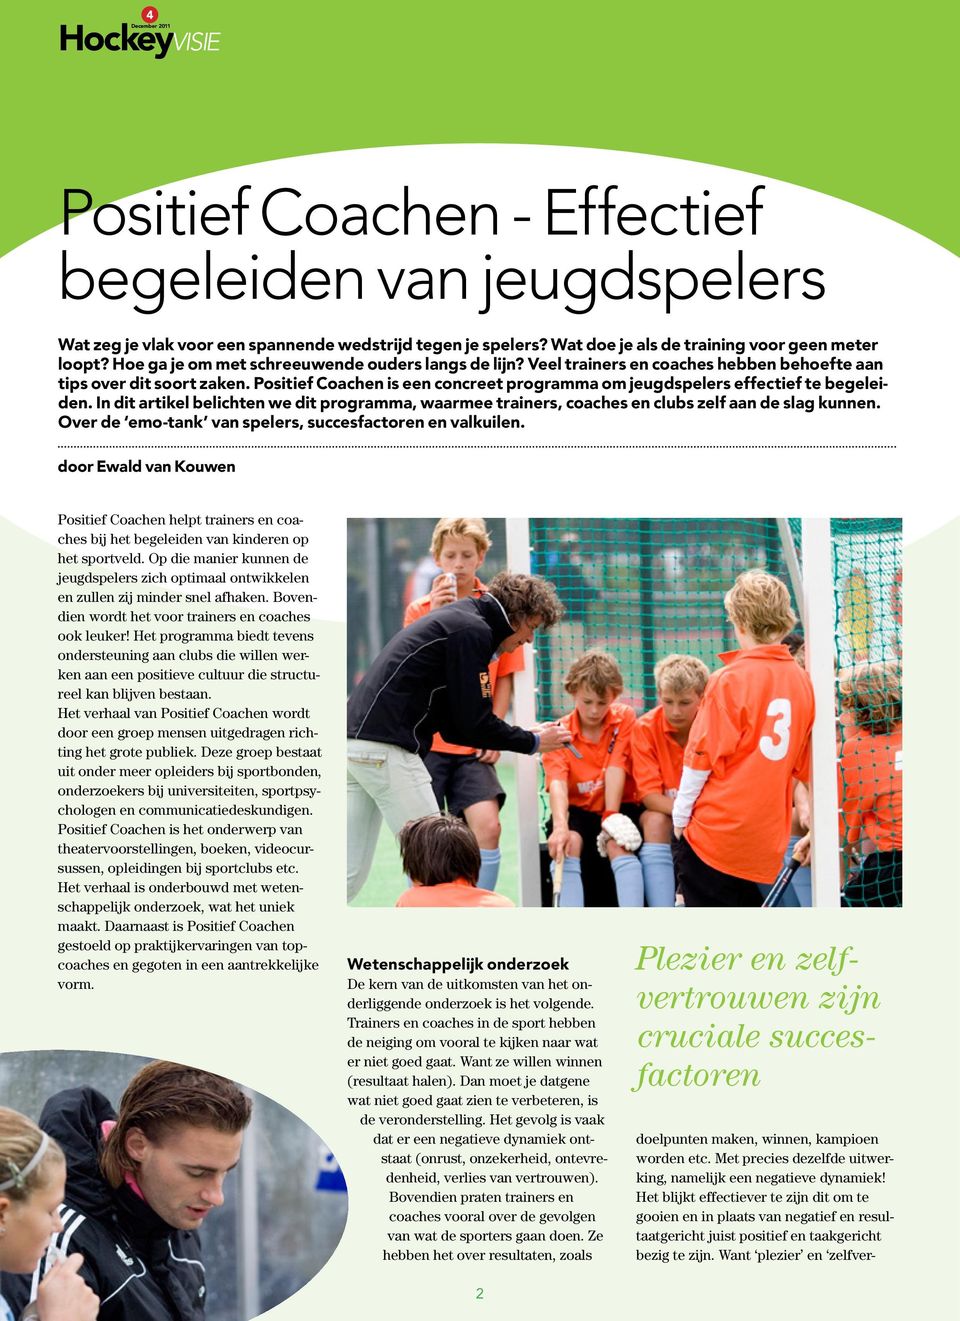 Positief Coachen is een concreet programma om jeugdspelers effectief te begeleiden. In dit artikel belichten we dit programma, waarmee trainers, coaches en clubs zelf aan de slag kunnen.